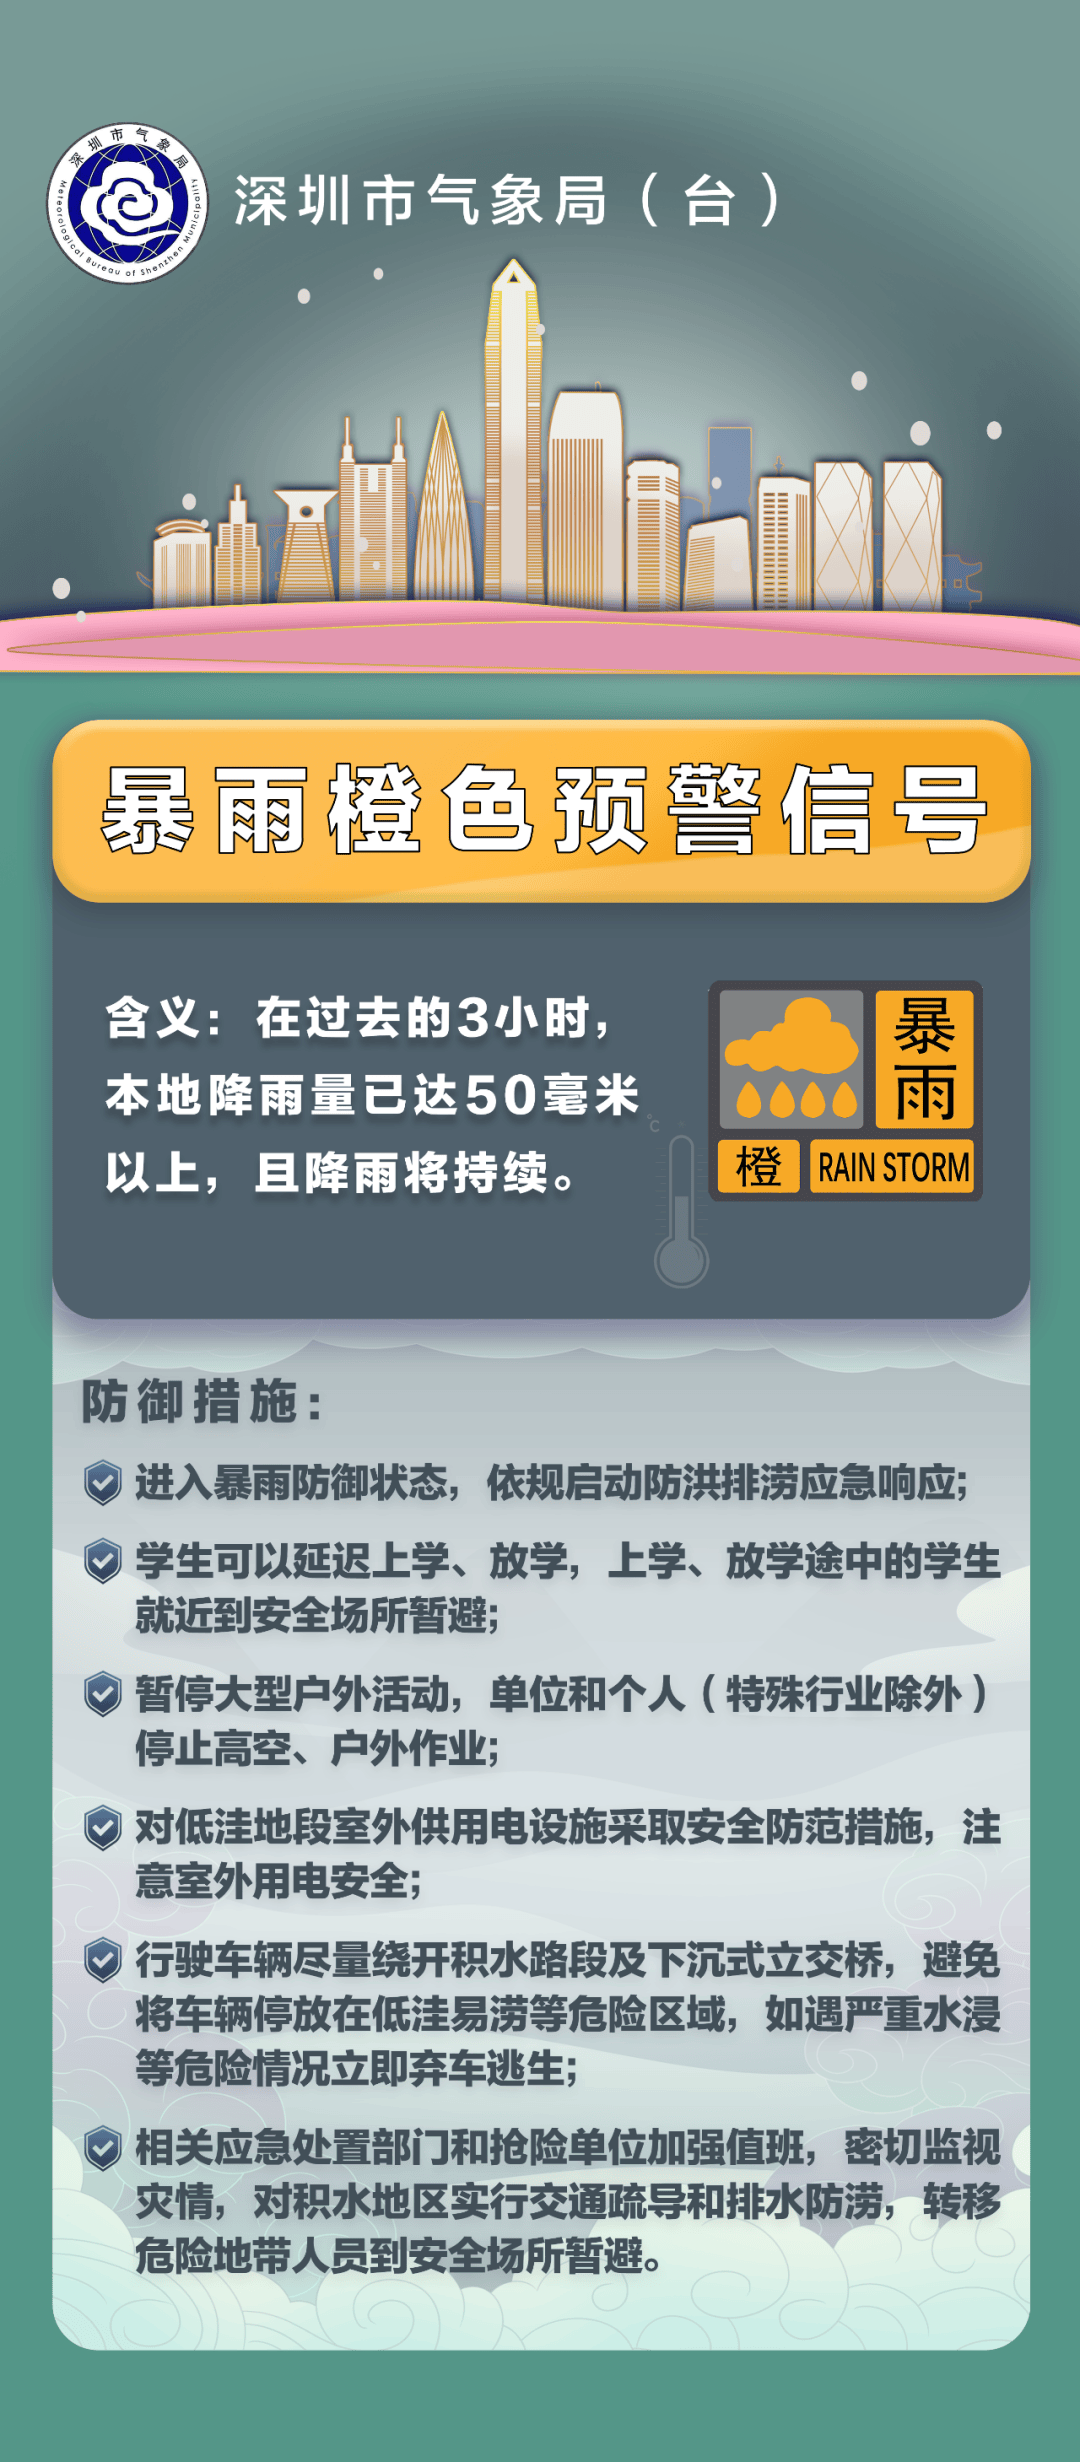 分区暴雨橙色预警信号生效中,深圳部分列车已停运